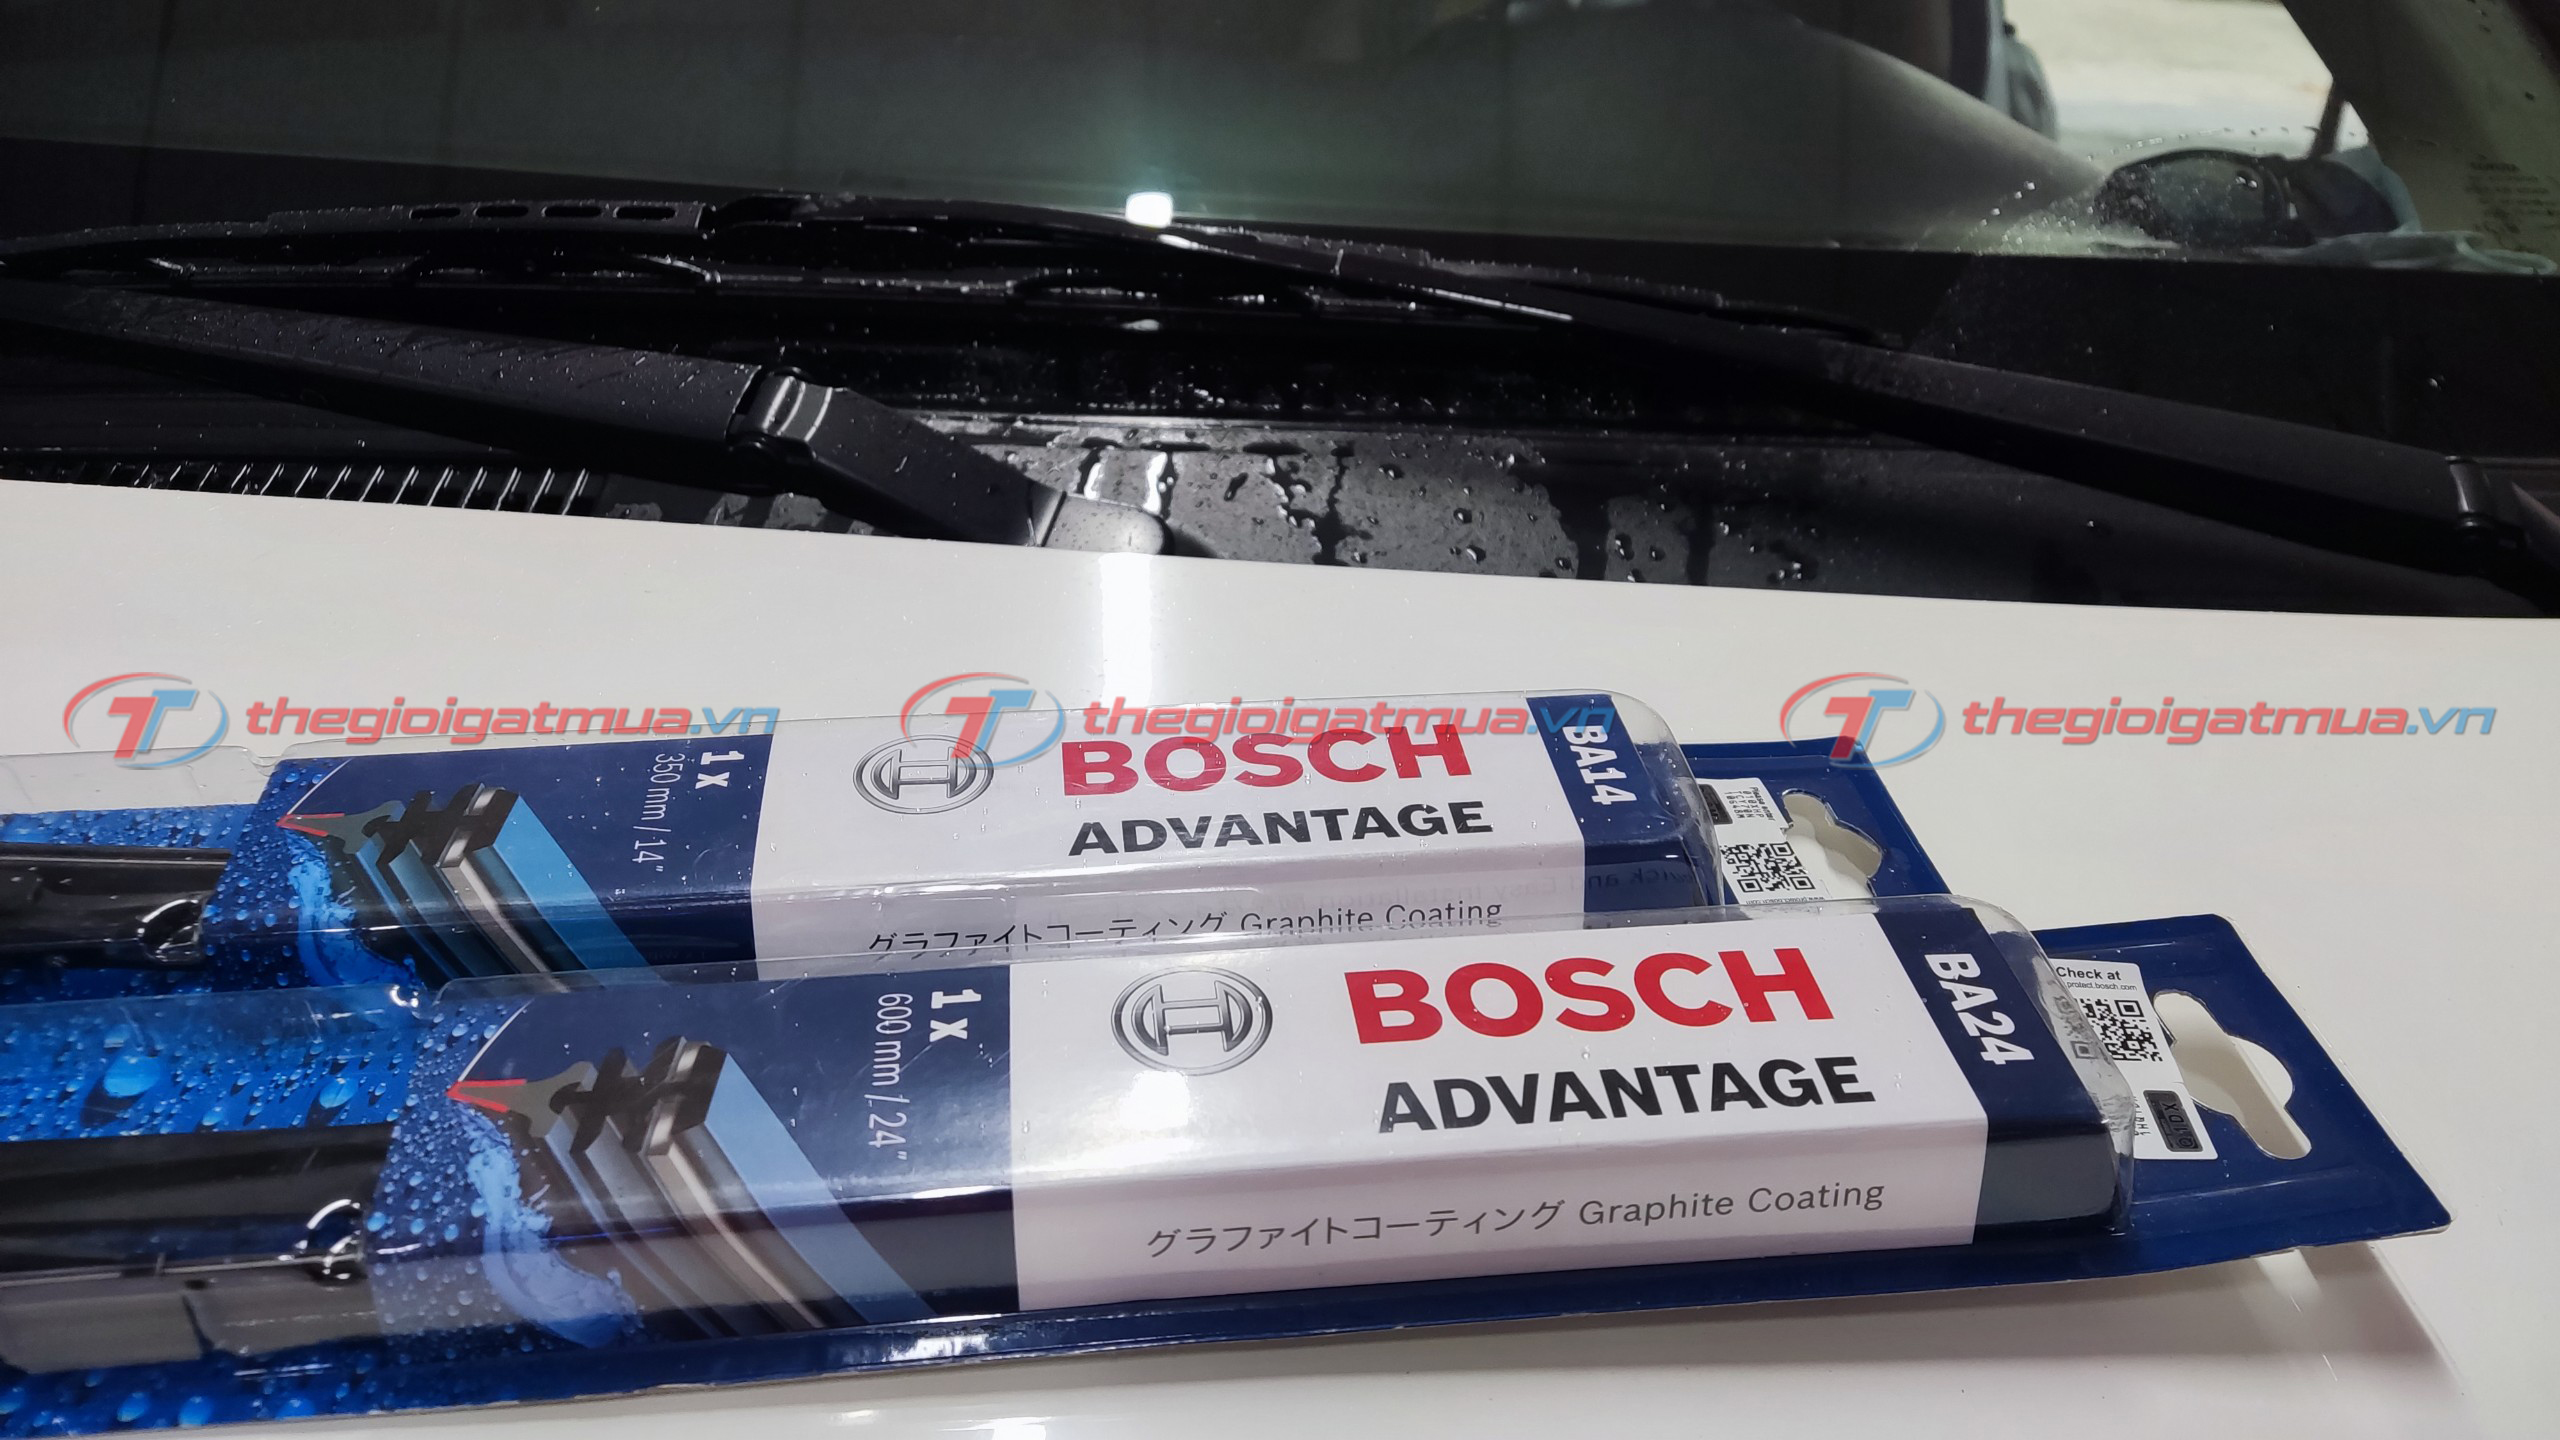 Cần gạt mưa Bosch uy tín